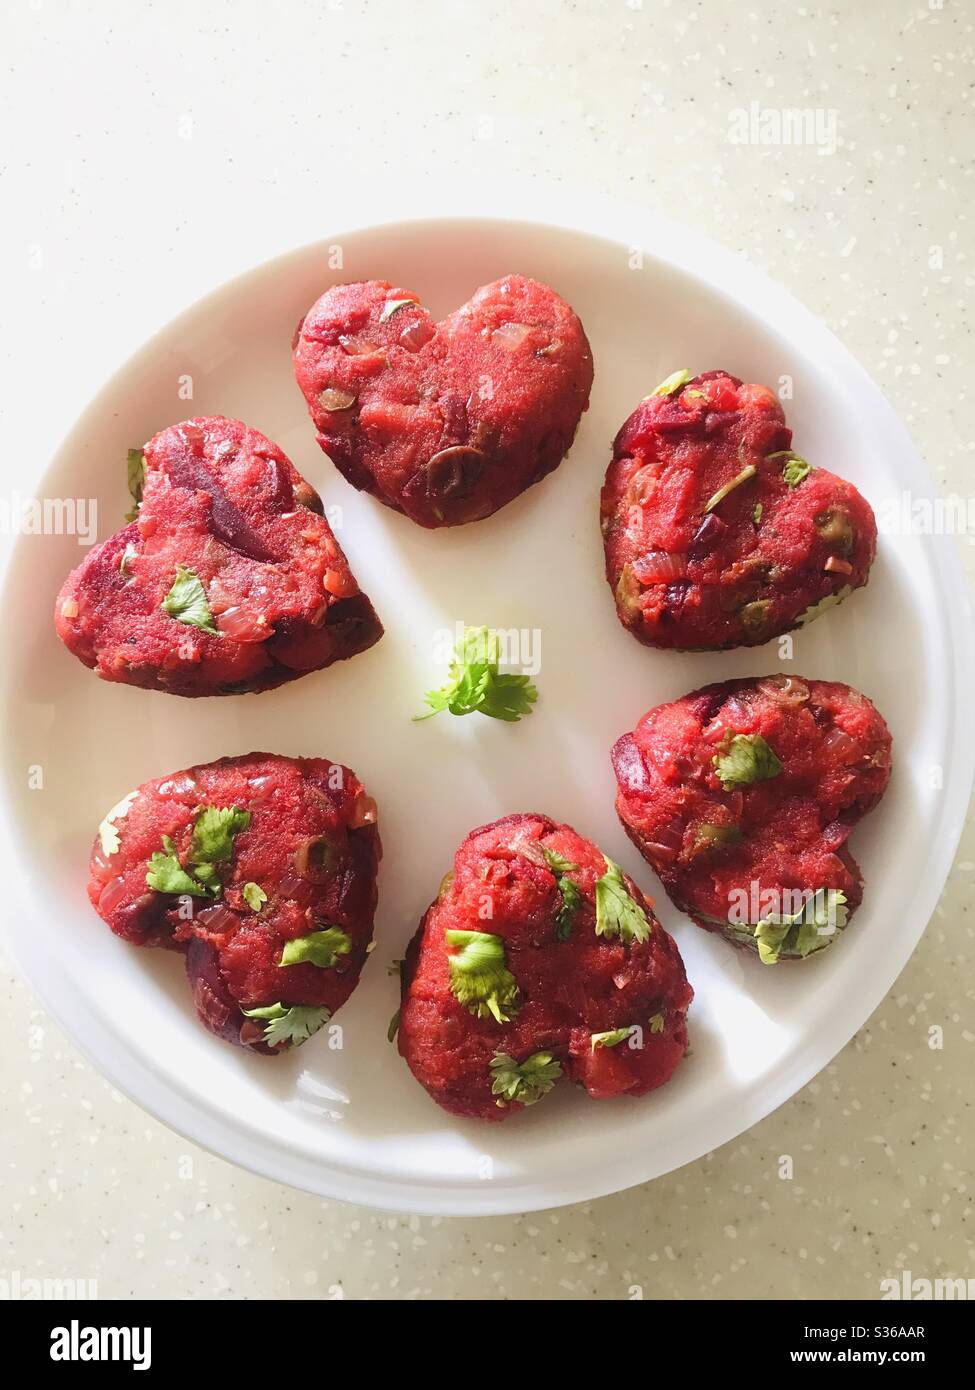 Hausgemachtes Gemüseschnitzel in Herzform arrangiert & in einen weißen Teller gelegt - Pre Cook veg Cutlet ein indischer Snack Stockfoto